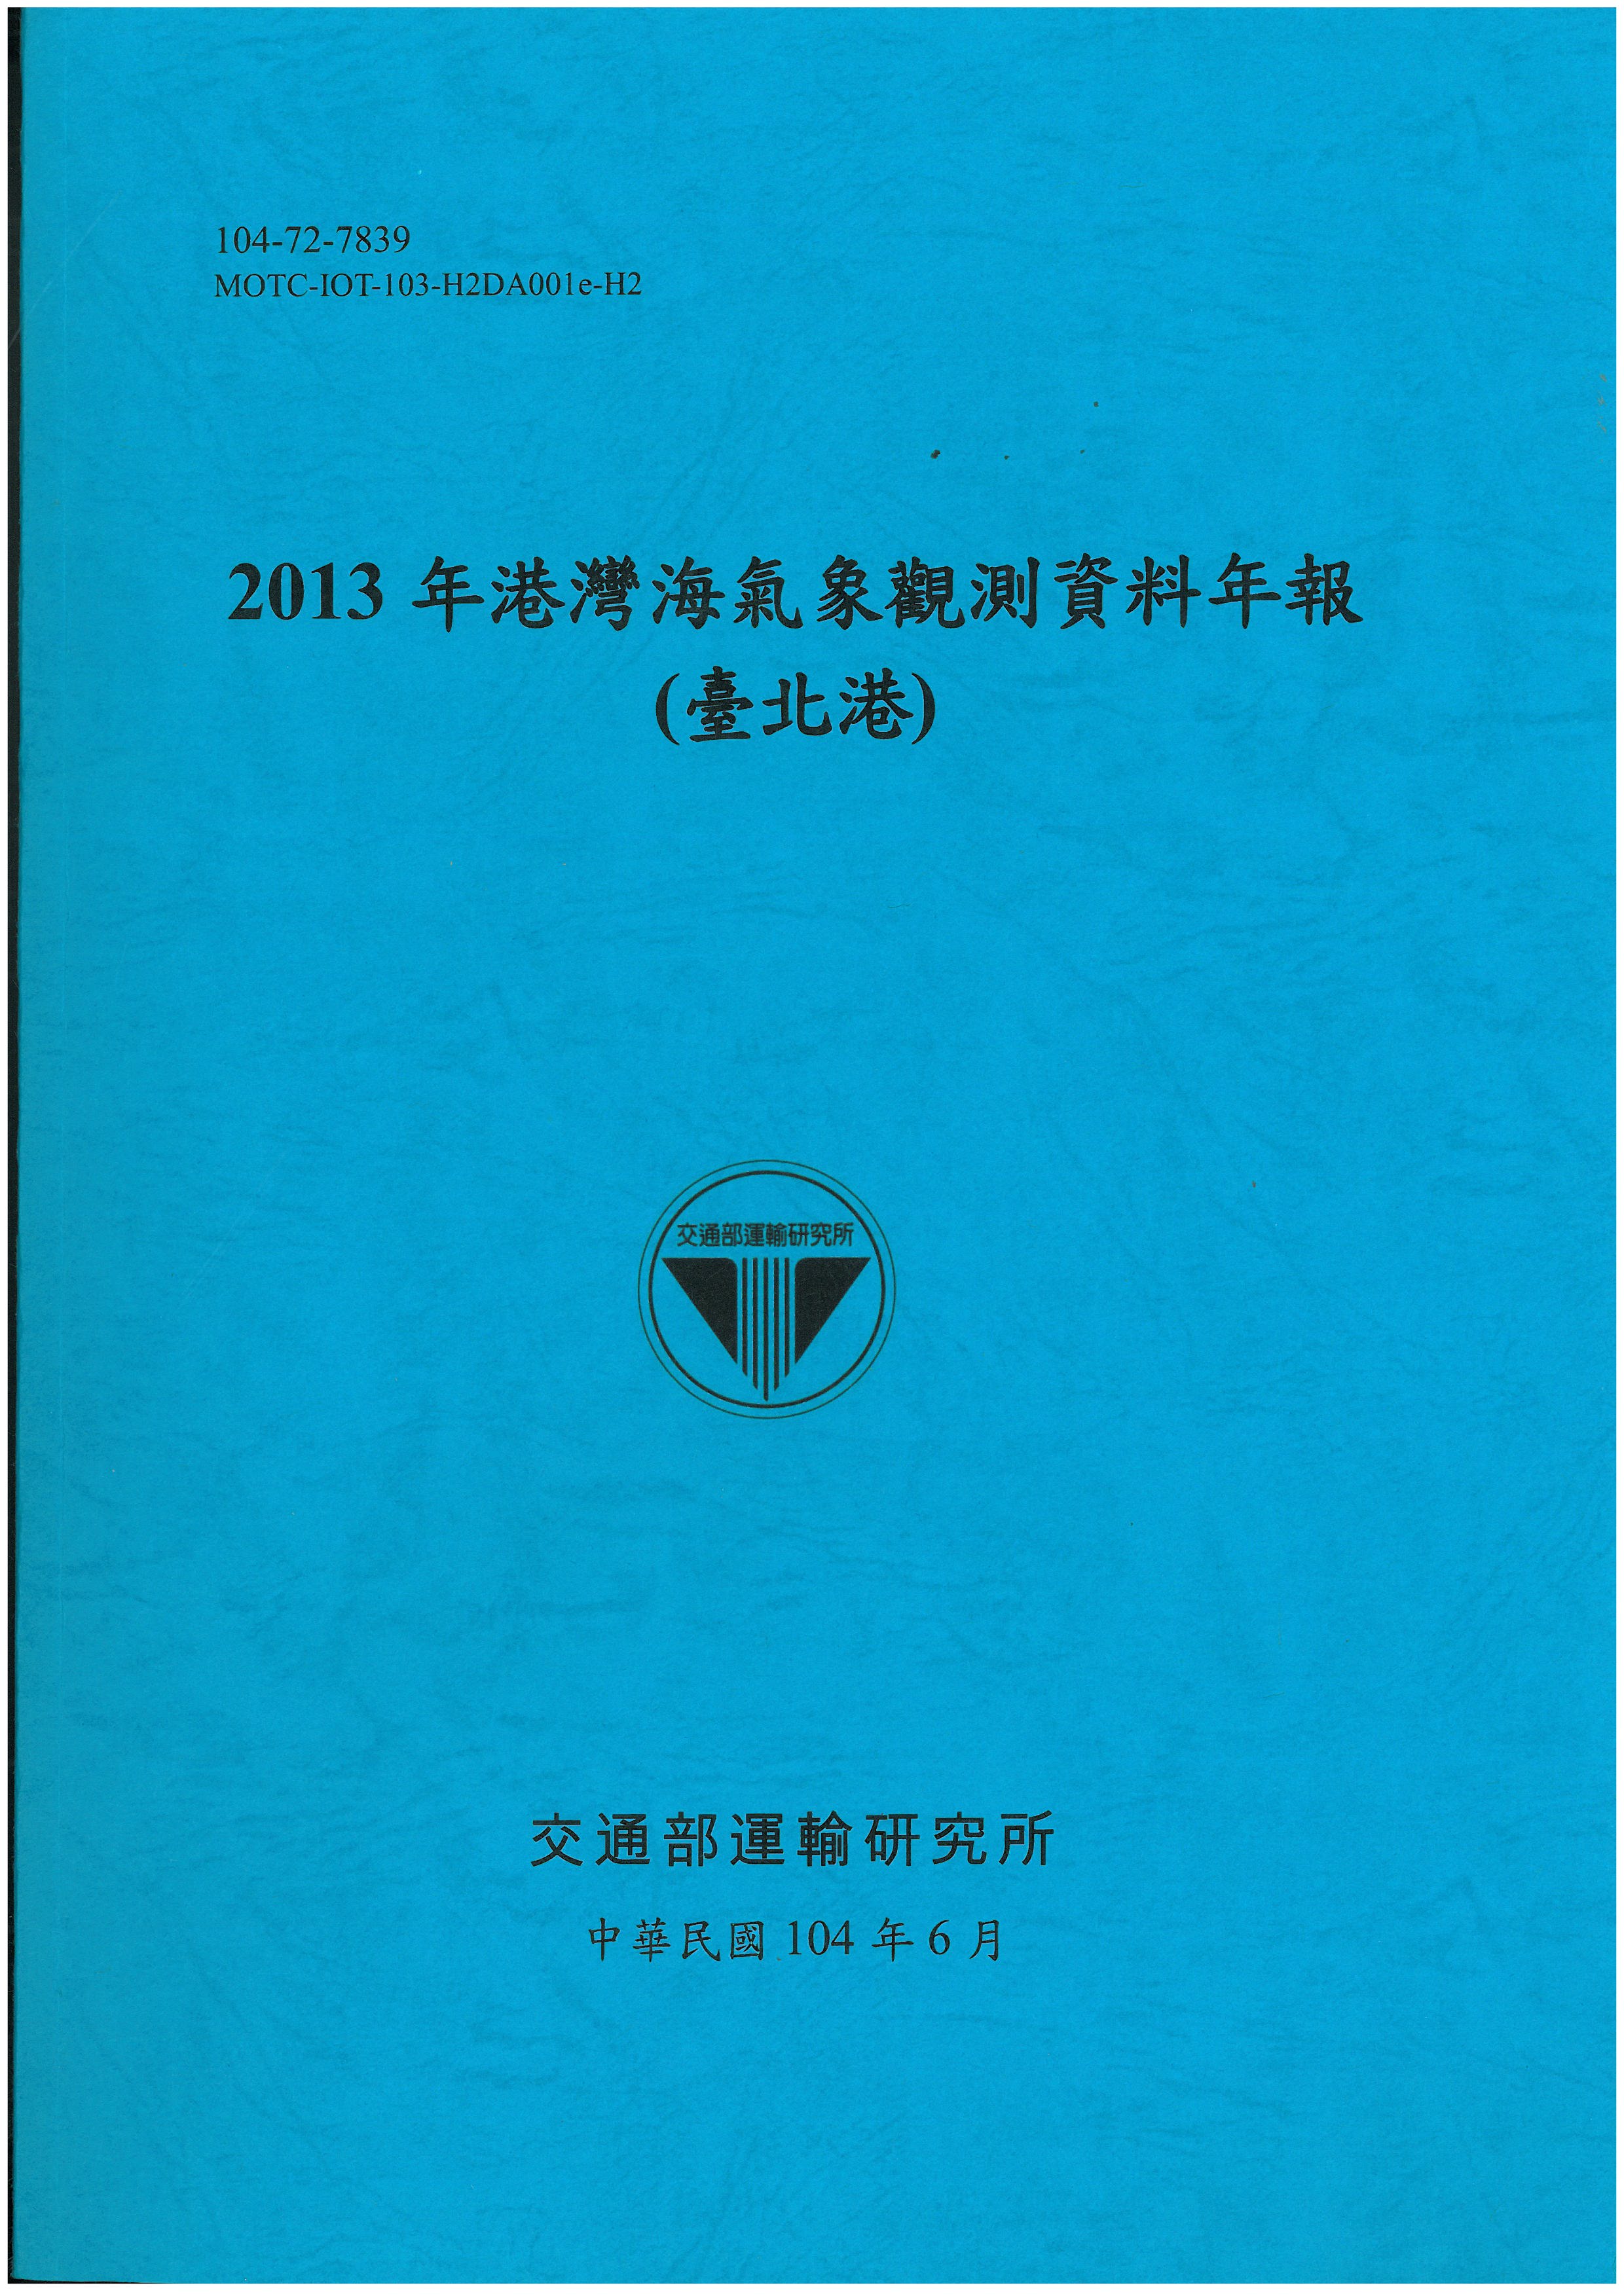 2013年港灣海氣象觀測資料年報(臺北港)